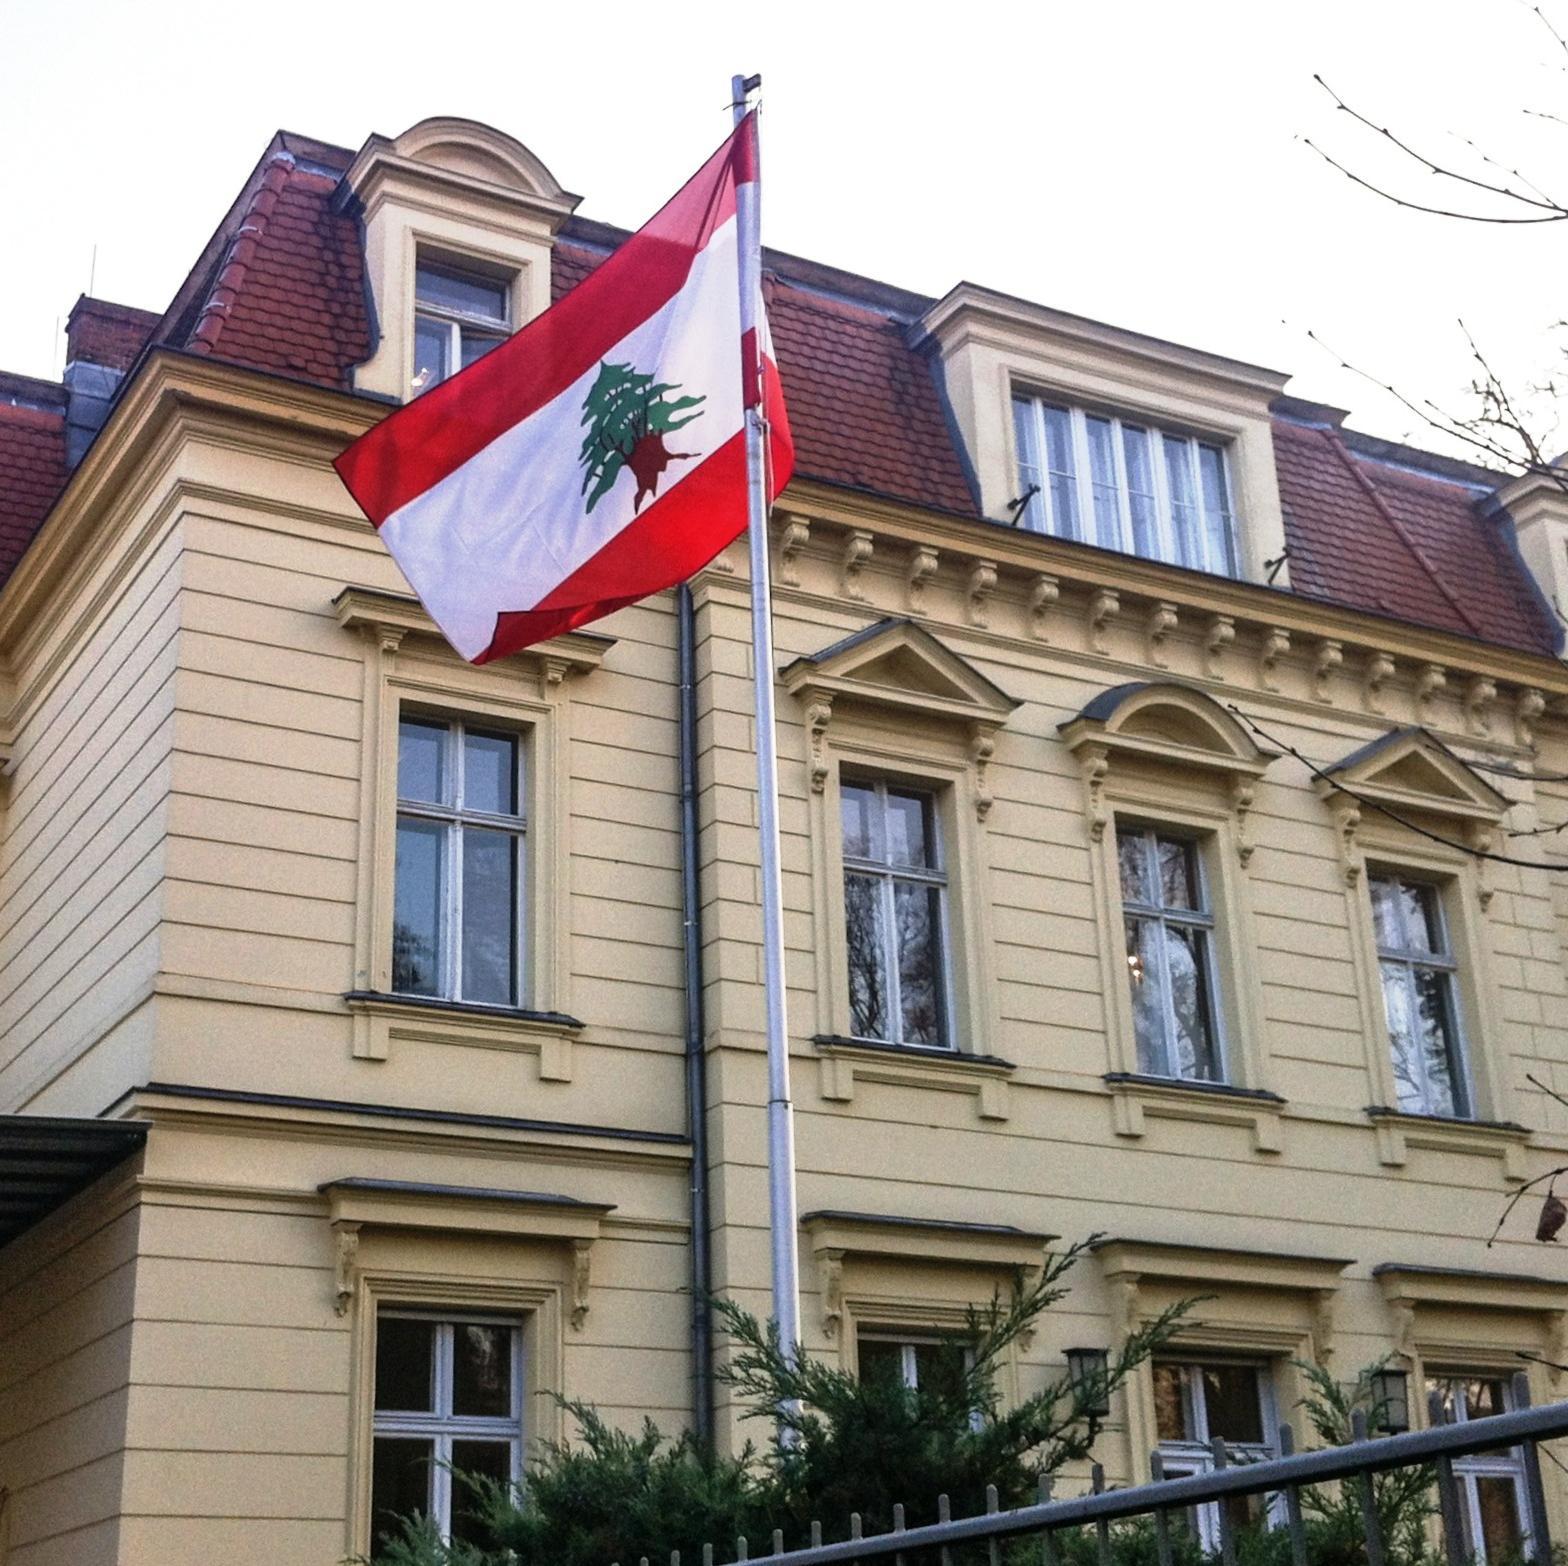 سفارة لبنان في برلين
BOTSCHAFT DES LIBANON BERLIN
EMBASSY OF LEBANON IN BERLIN